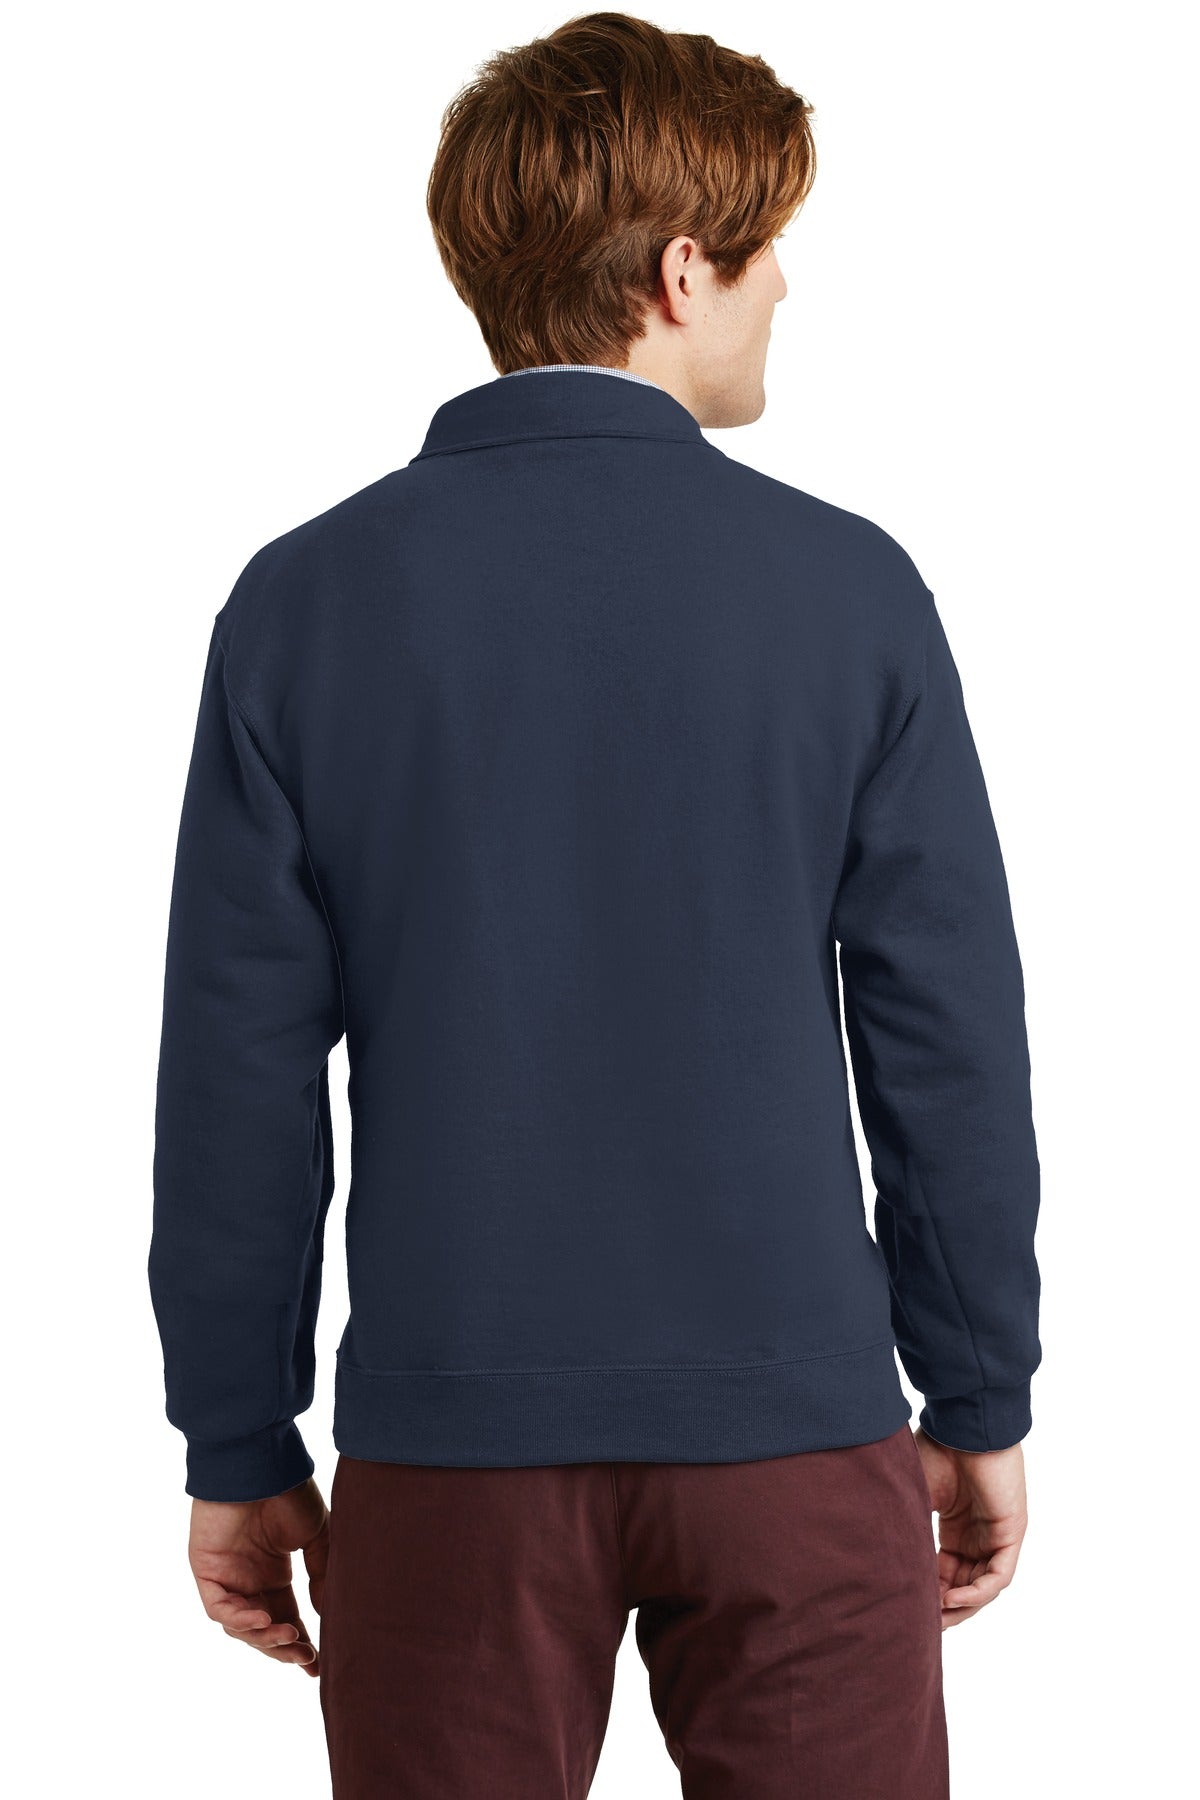 Jerzees Super Sweats NuBlend - 1/4-Zip Sweatshirt with Cadet Collar. 4528M